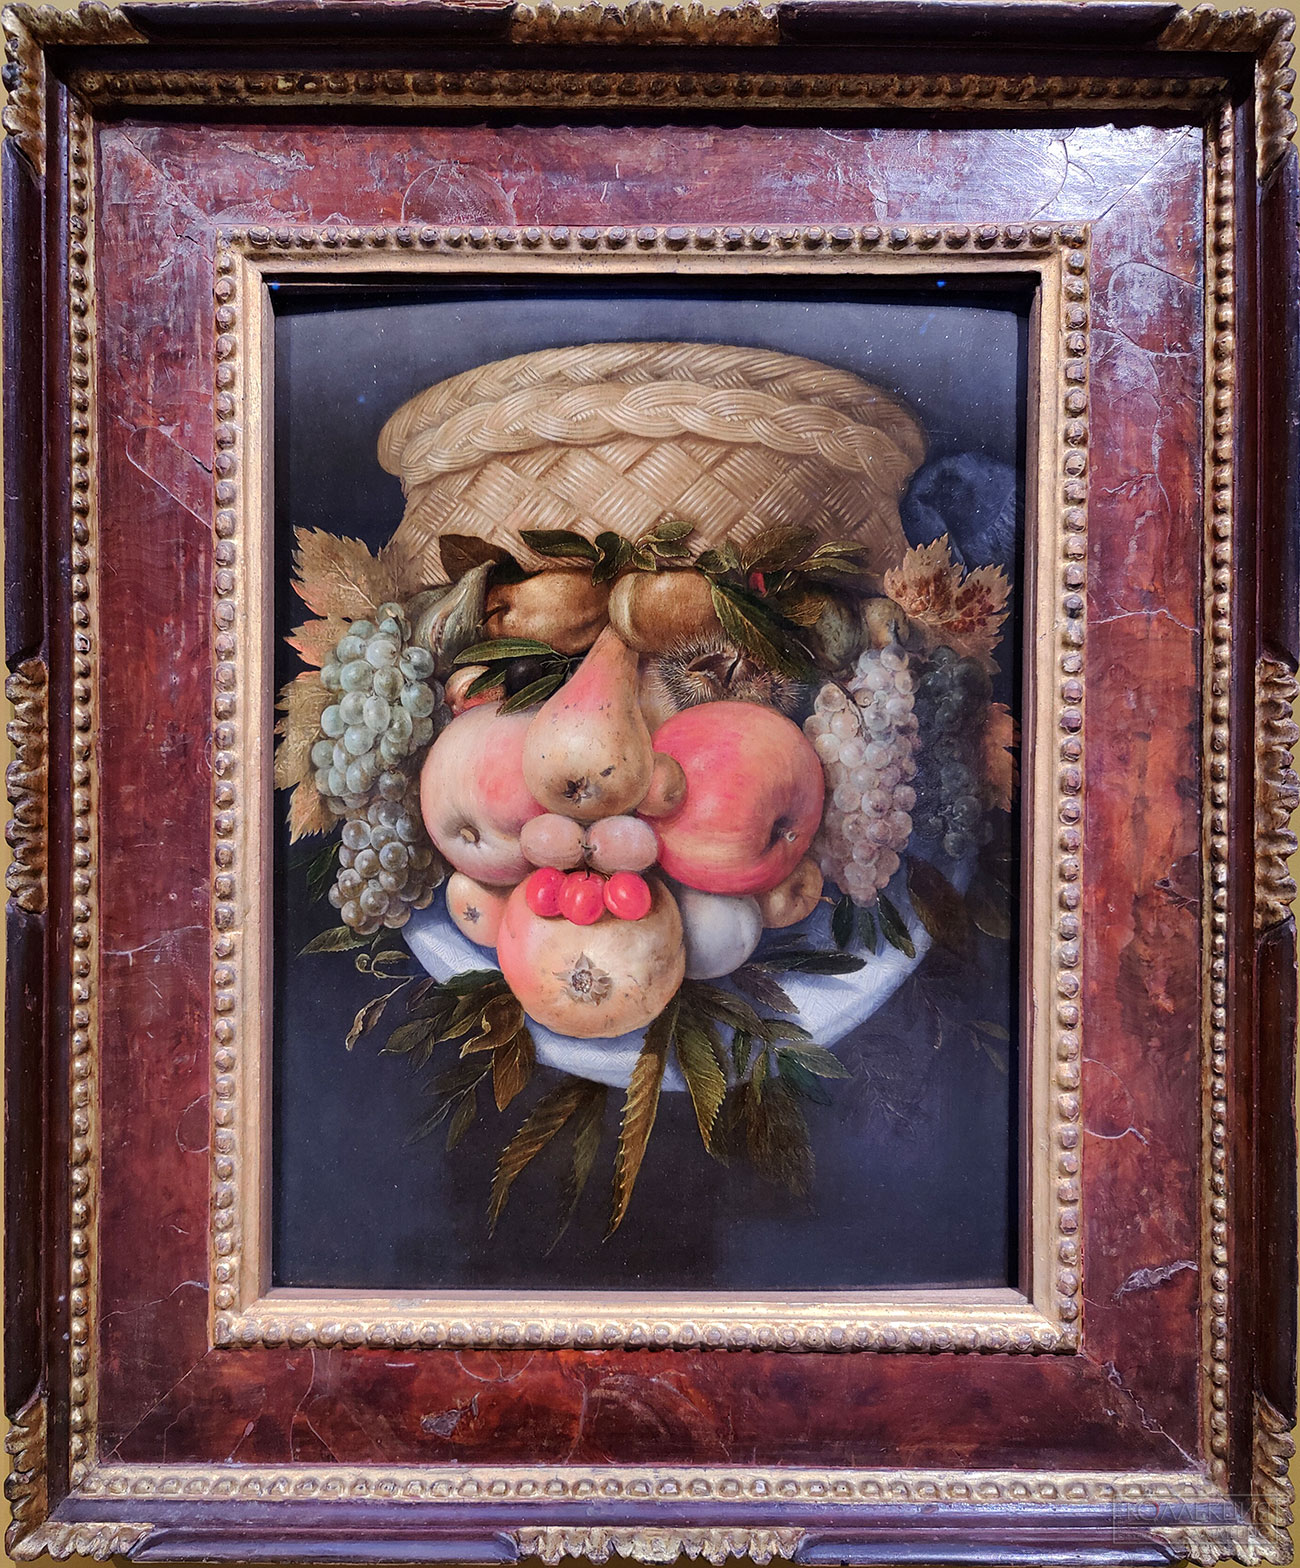 Джузеппе Арчимбольдо. Милан, 1526 - 1593. Мужская голова / Корзина фруктов. Частное собрание